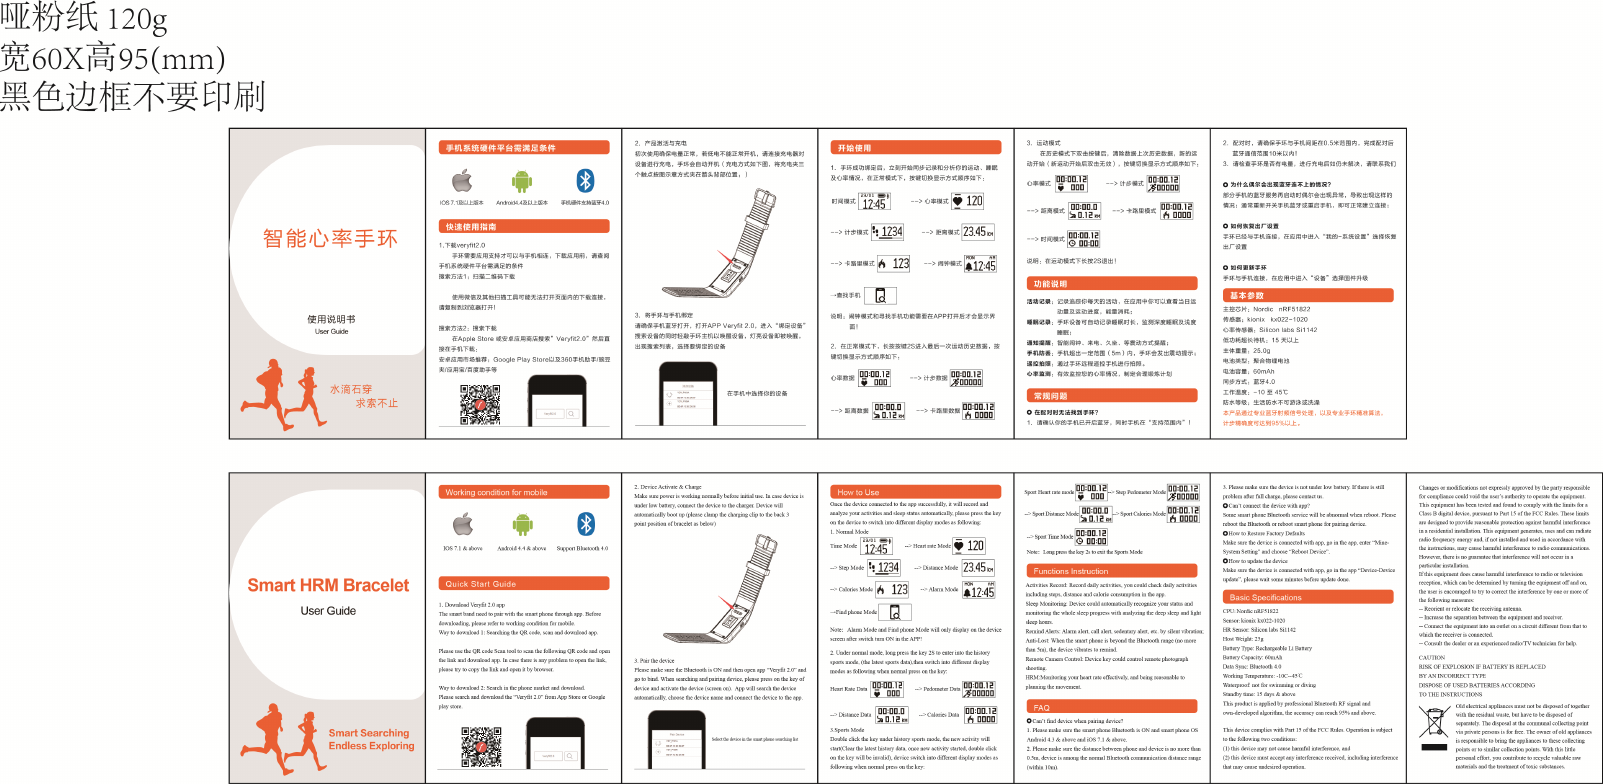 abaqus user manual pdf